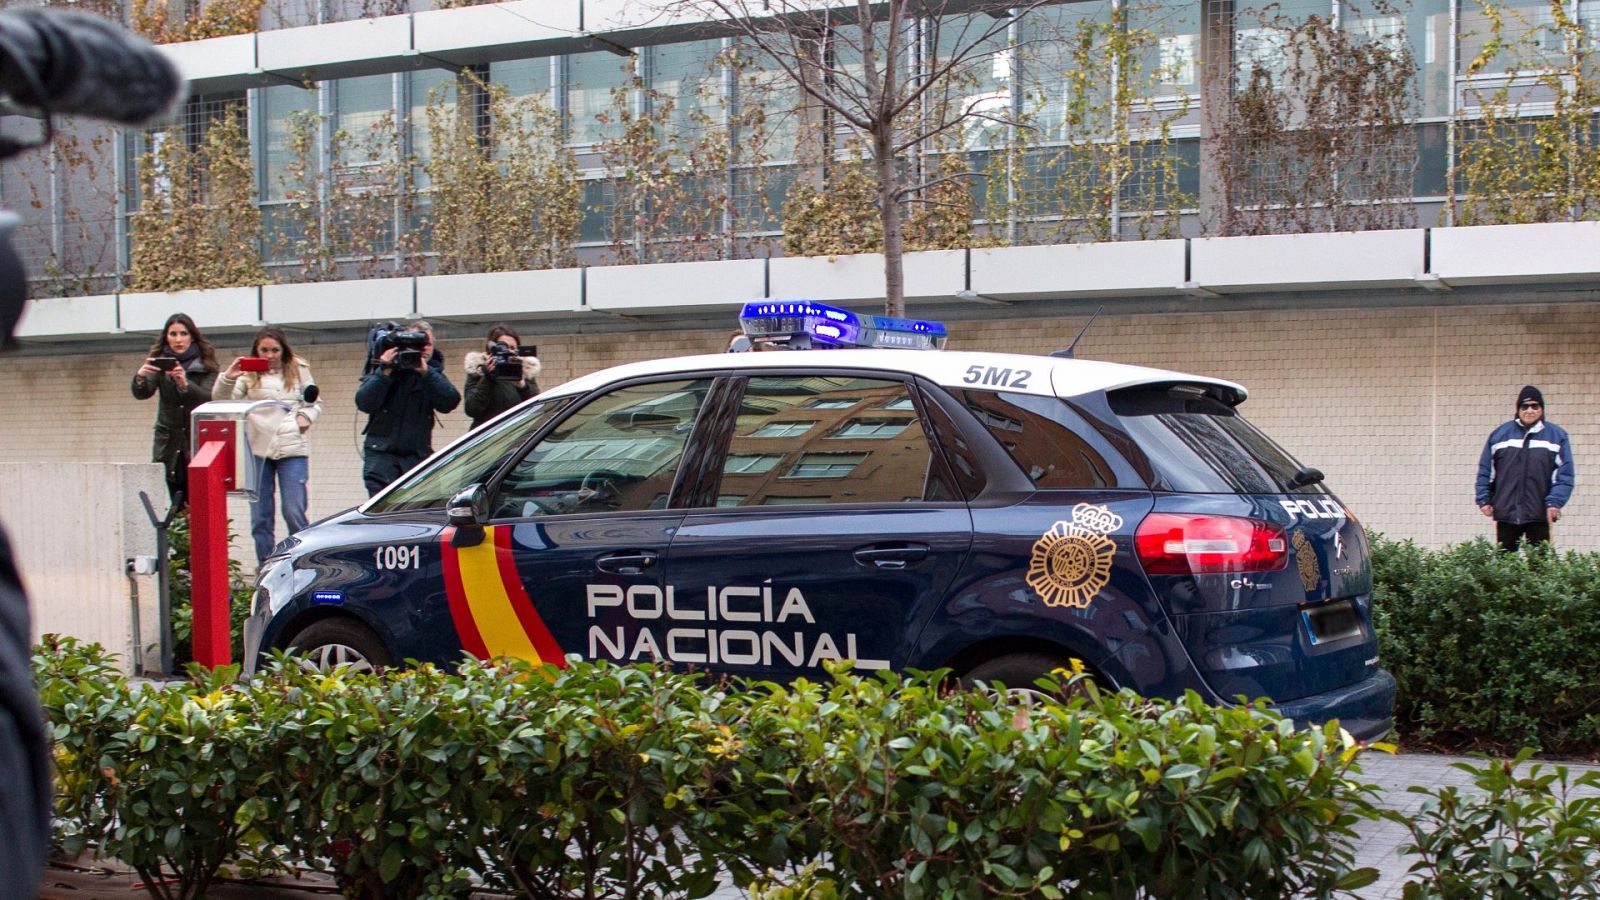 El vehículo de la Policía Nacional que transportabatras su detención a la madre de la niña de 5 años hallada muerta en la habitación de un hotel en Logroño